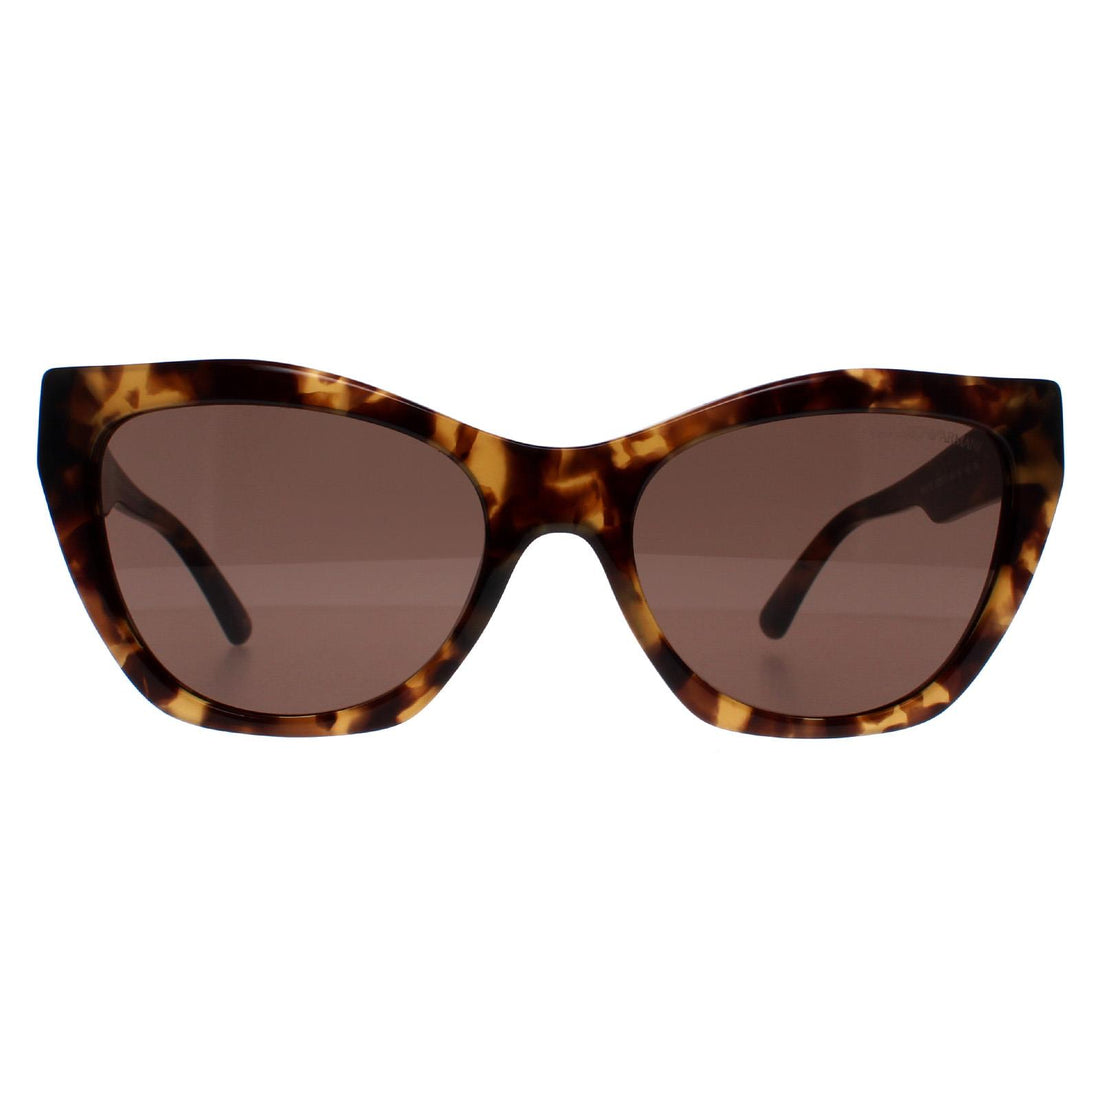 Emporio Armani EA4176 Sunglasses